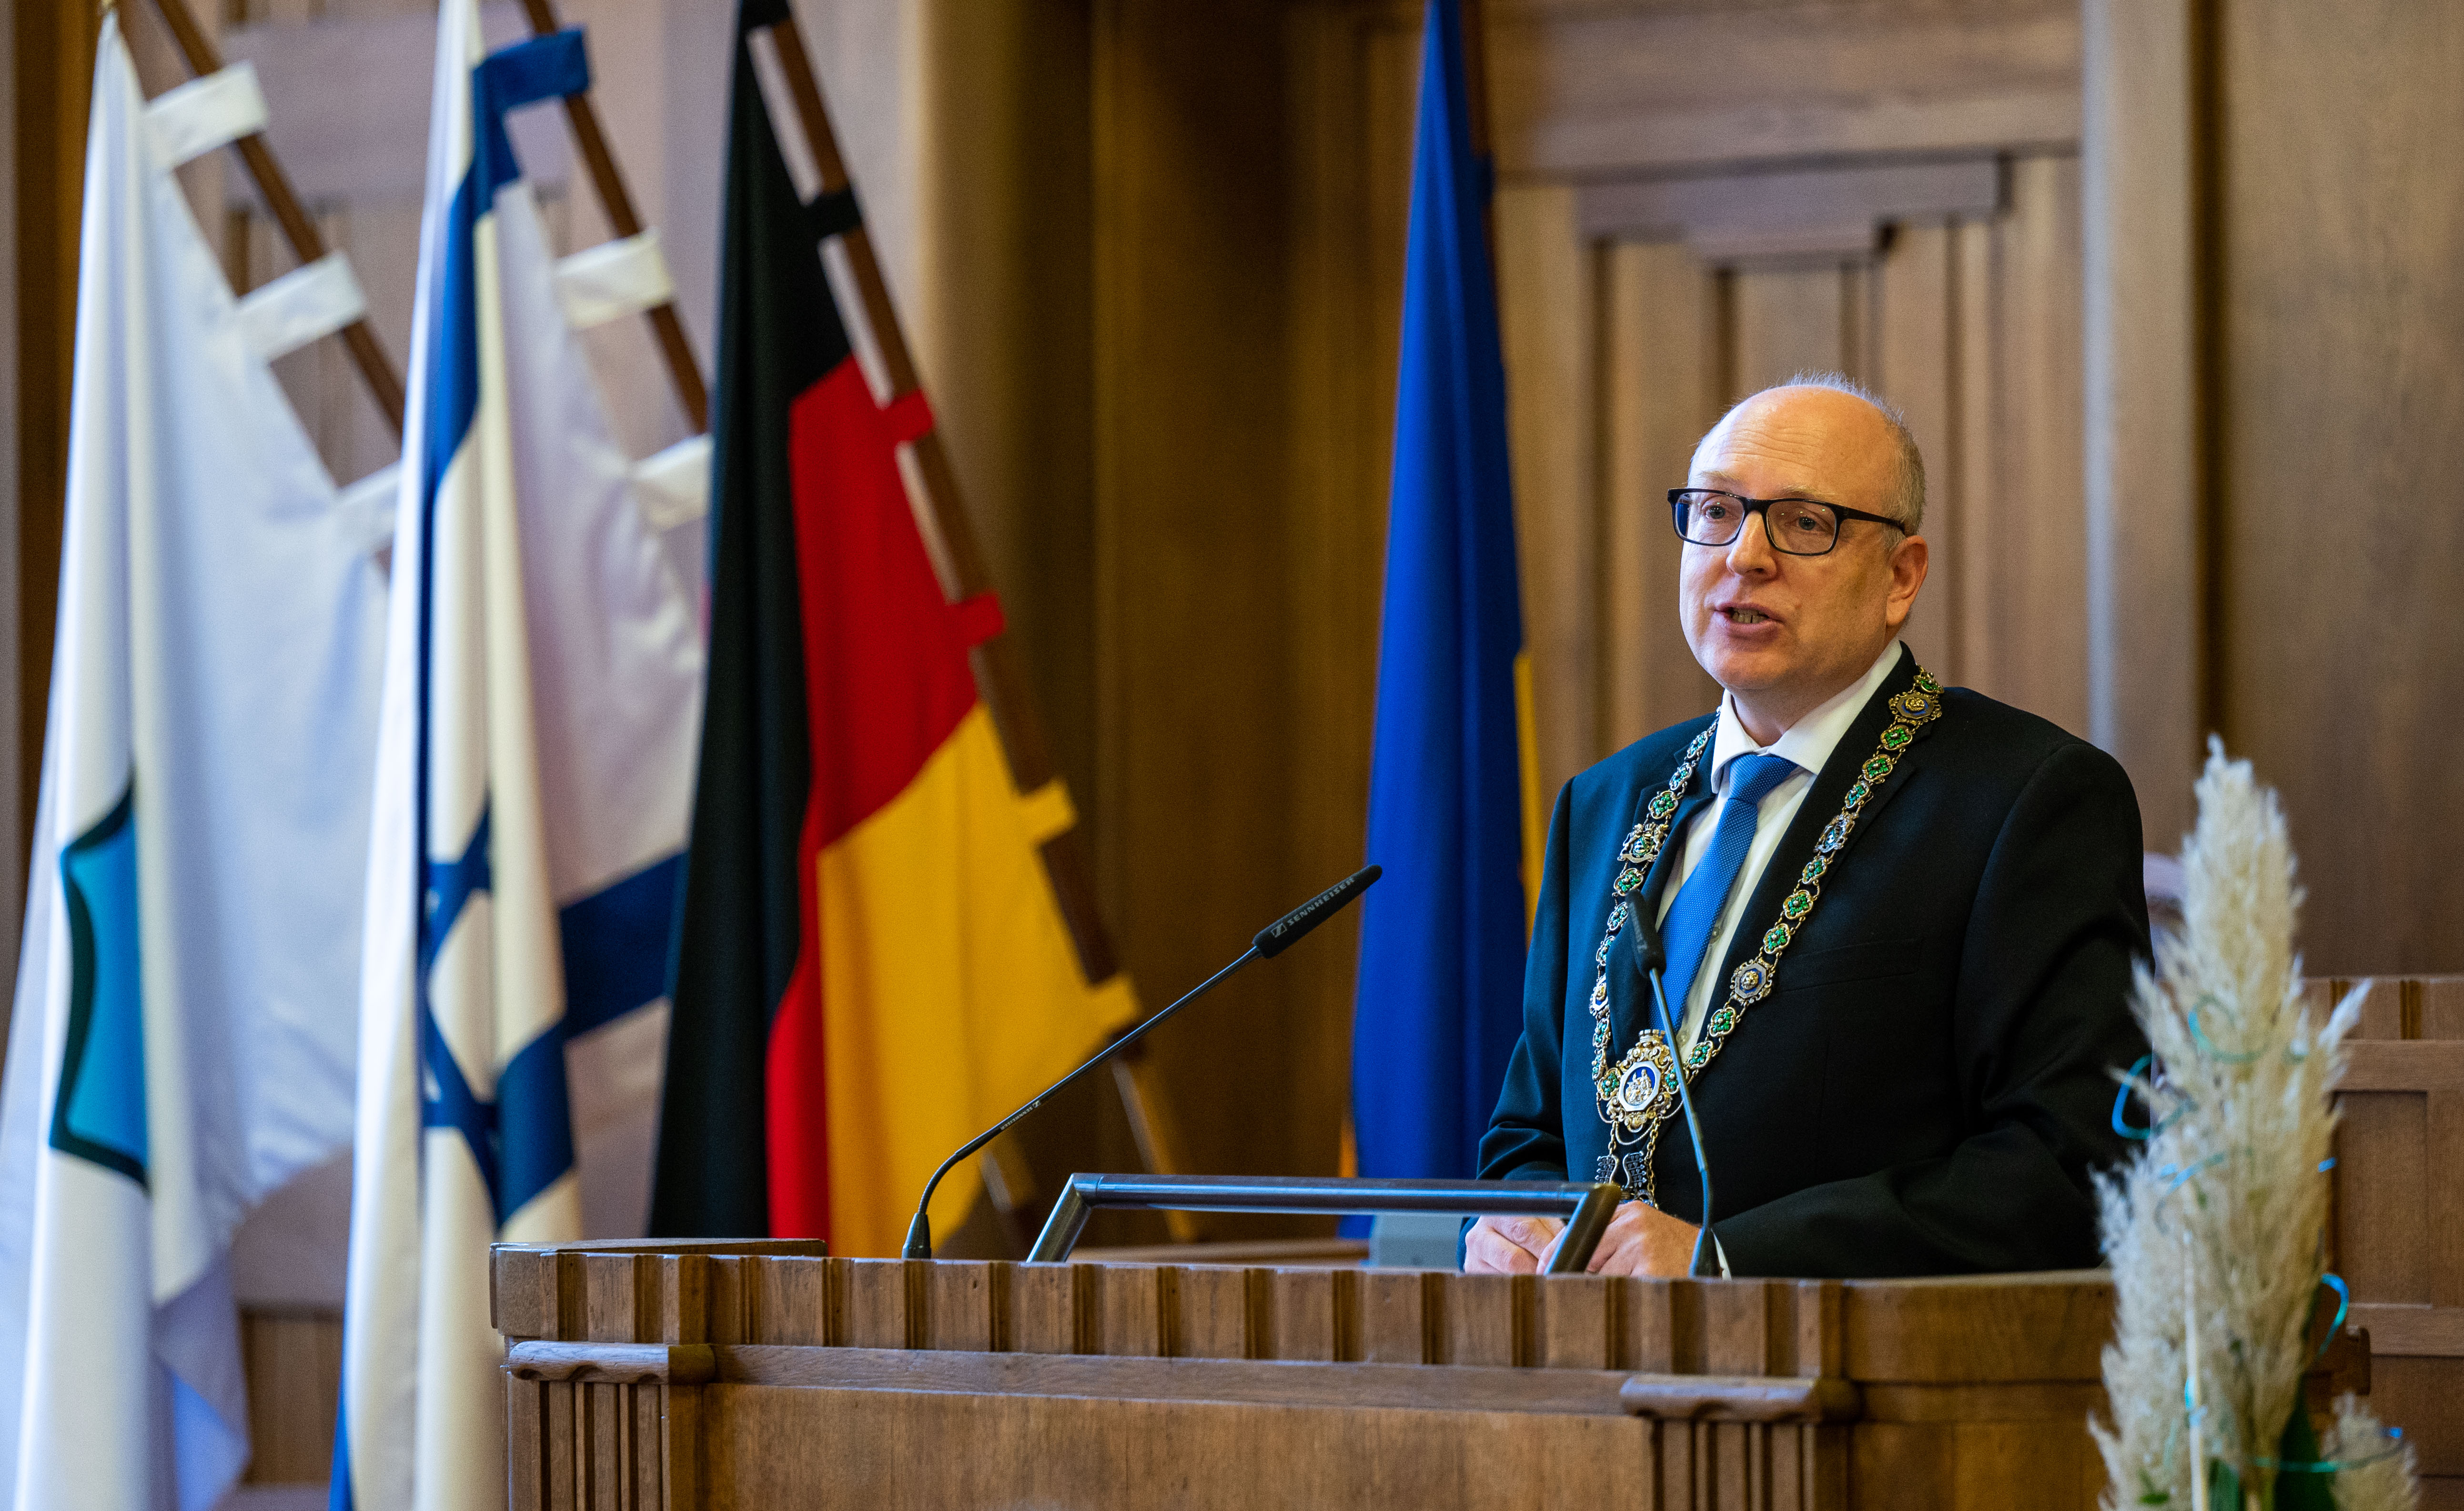 Oberbürgermeister Sven Schulze bei der Festrede anlässlich der Unterzeichnung der Städtepartnerschaft mit Kirjat Bialik am 26. Oktober 2022